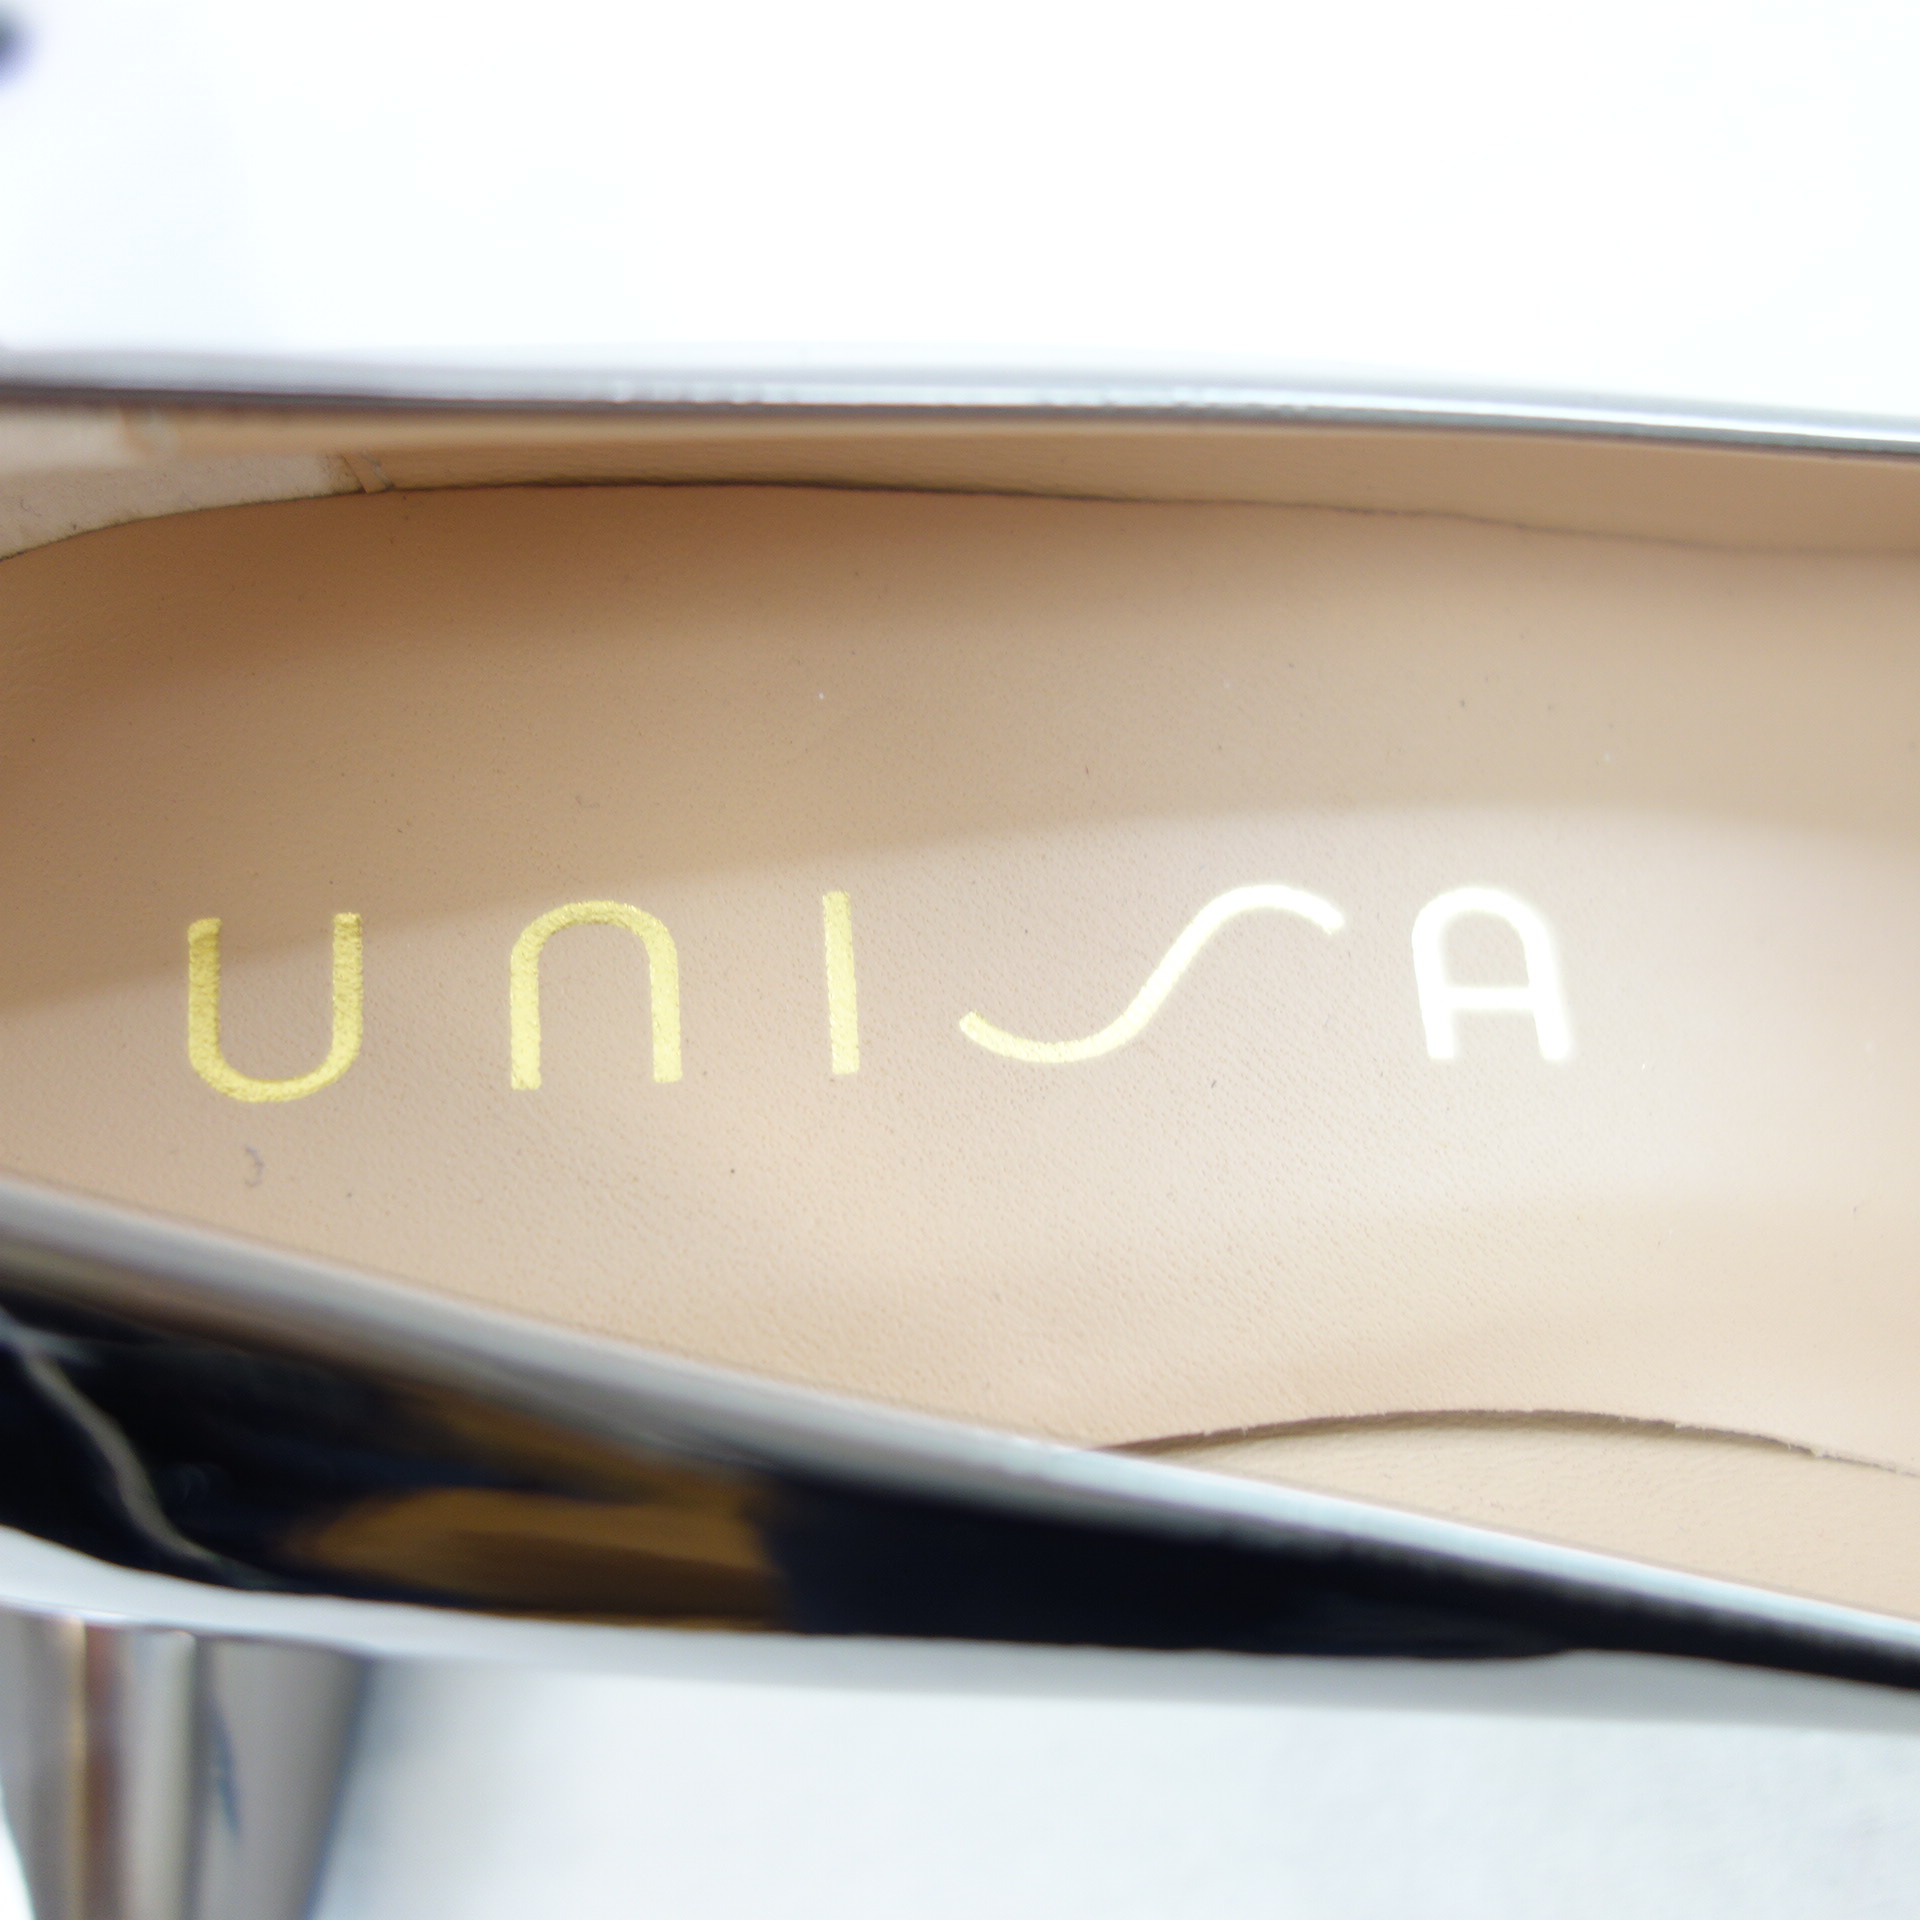 UNISA Damen Schuhe Pumps Stiletto Absat Silber Leder Modell Tola Größe 39 Verspiegelt